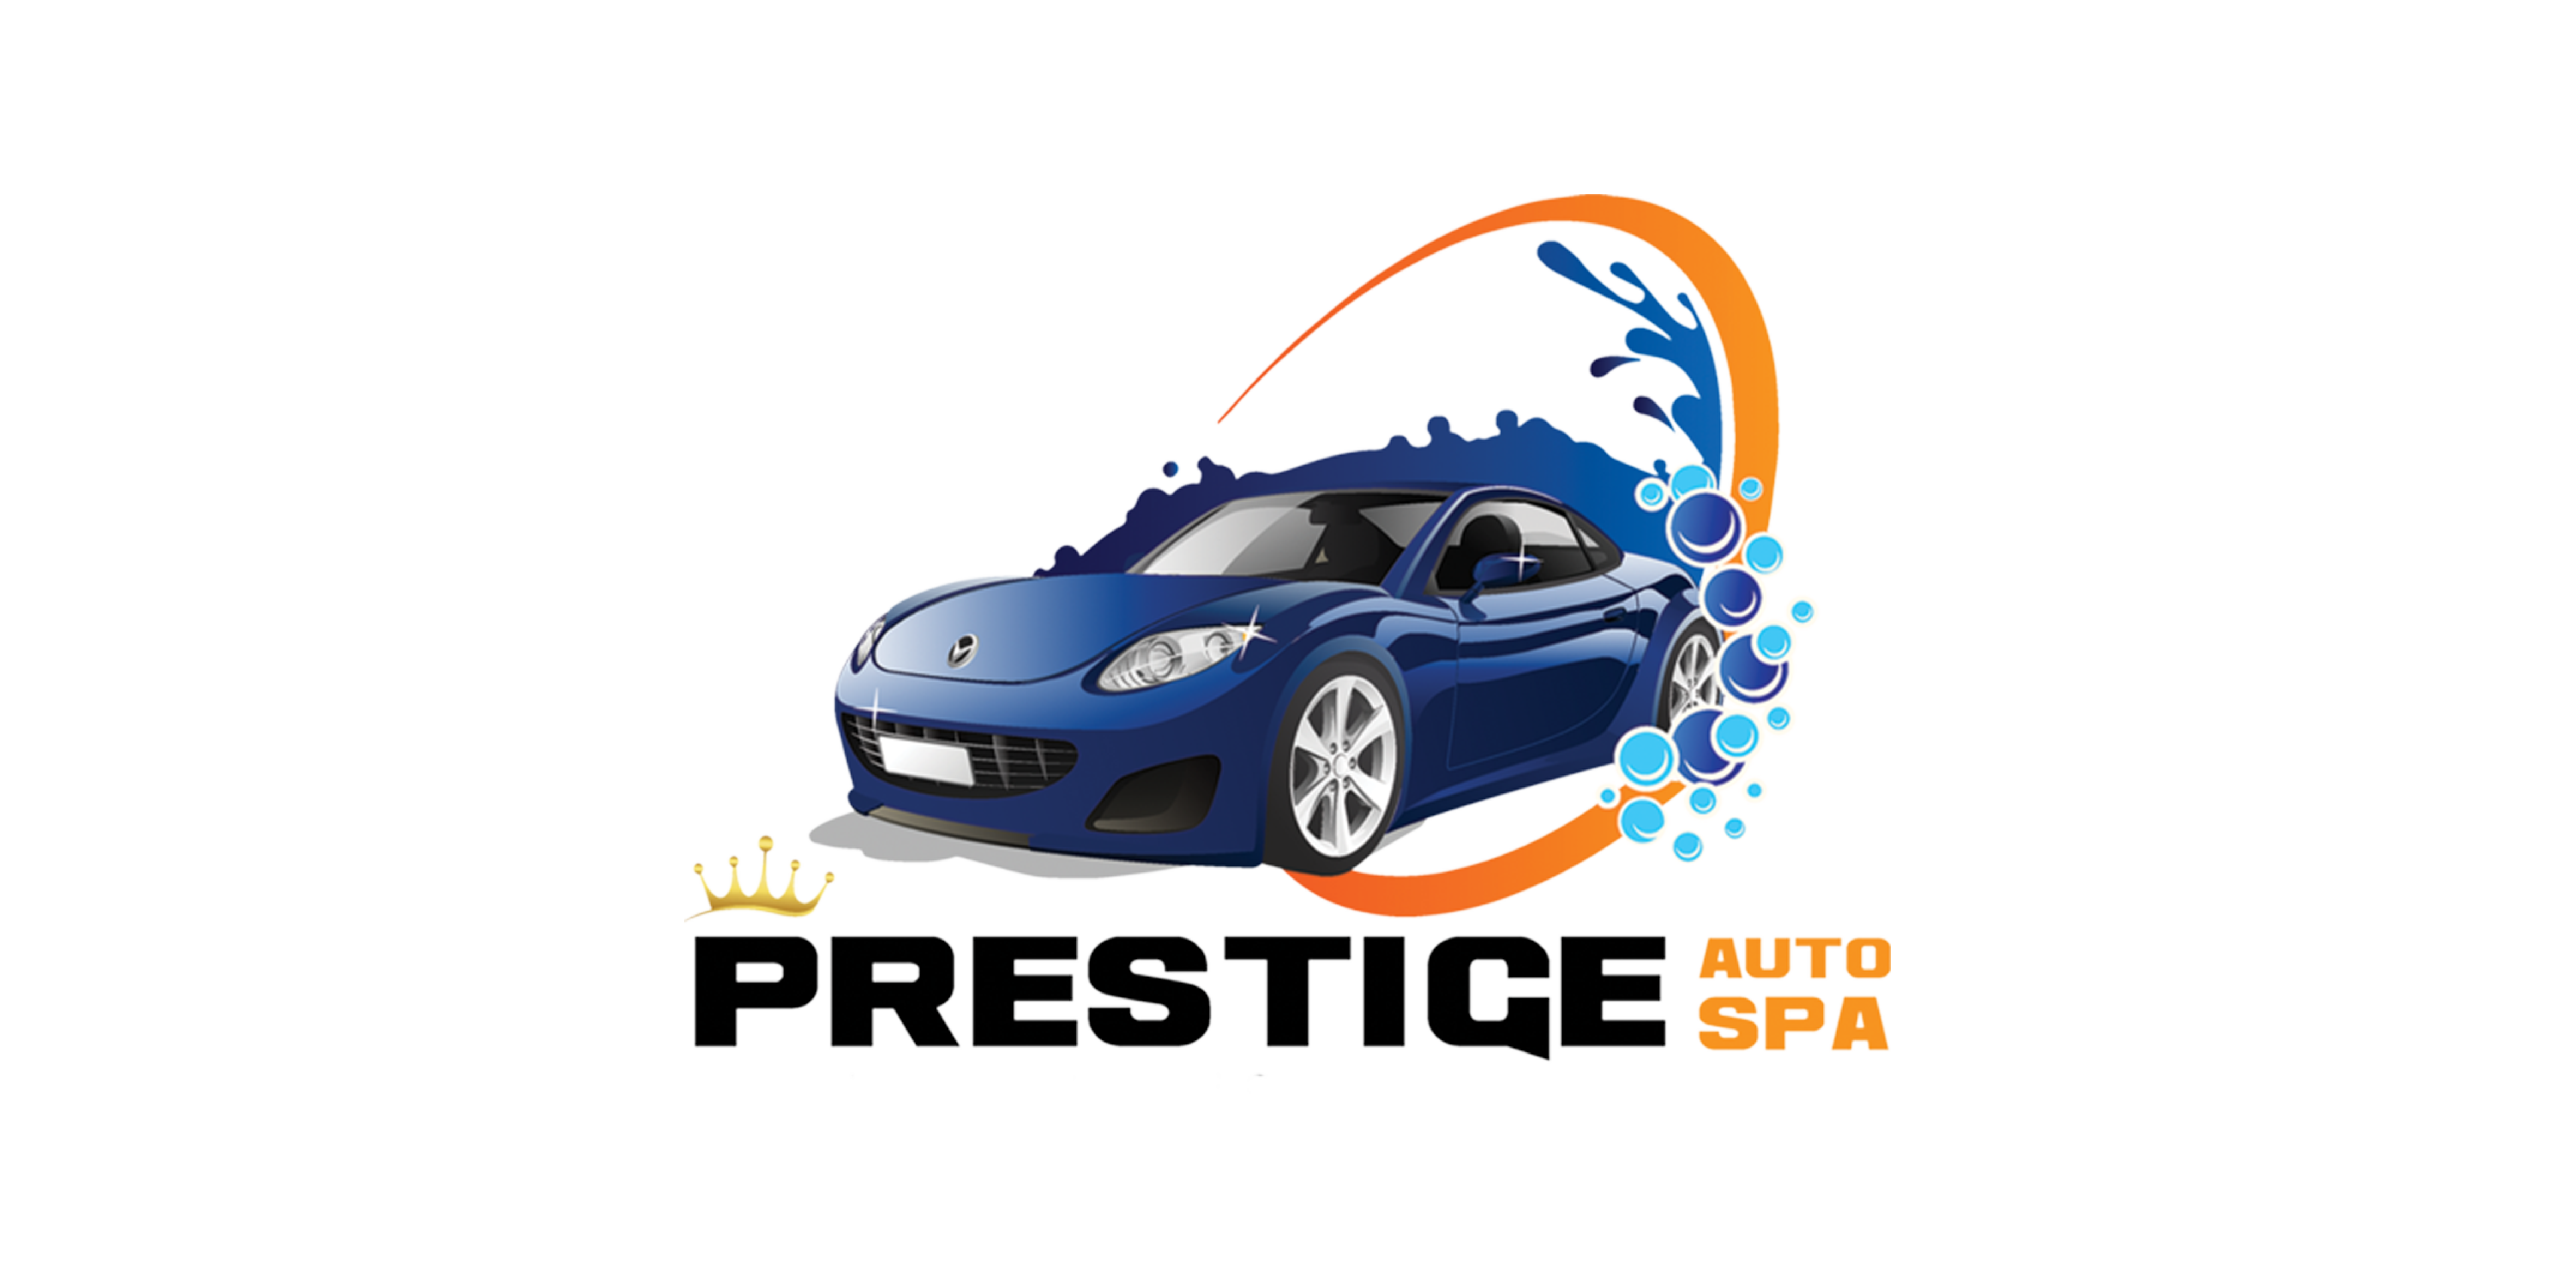 Prestige-Auto-Spa